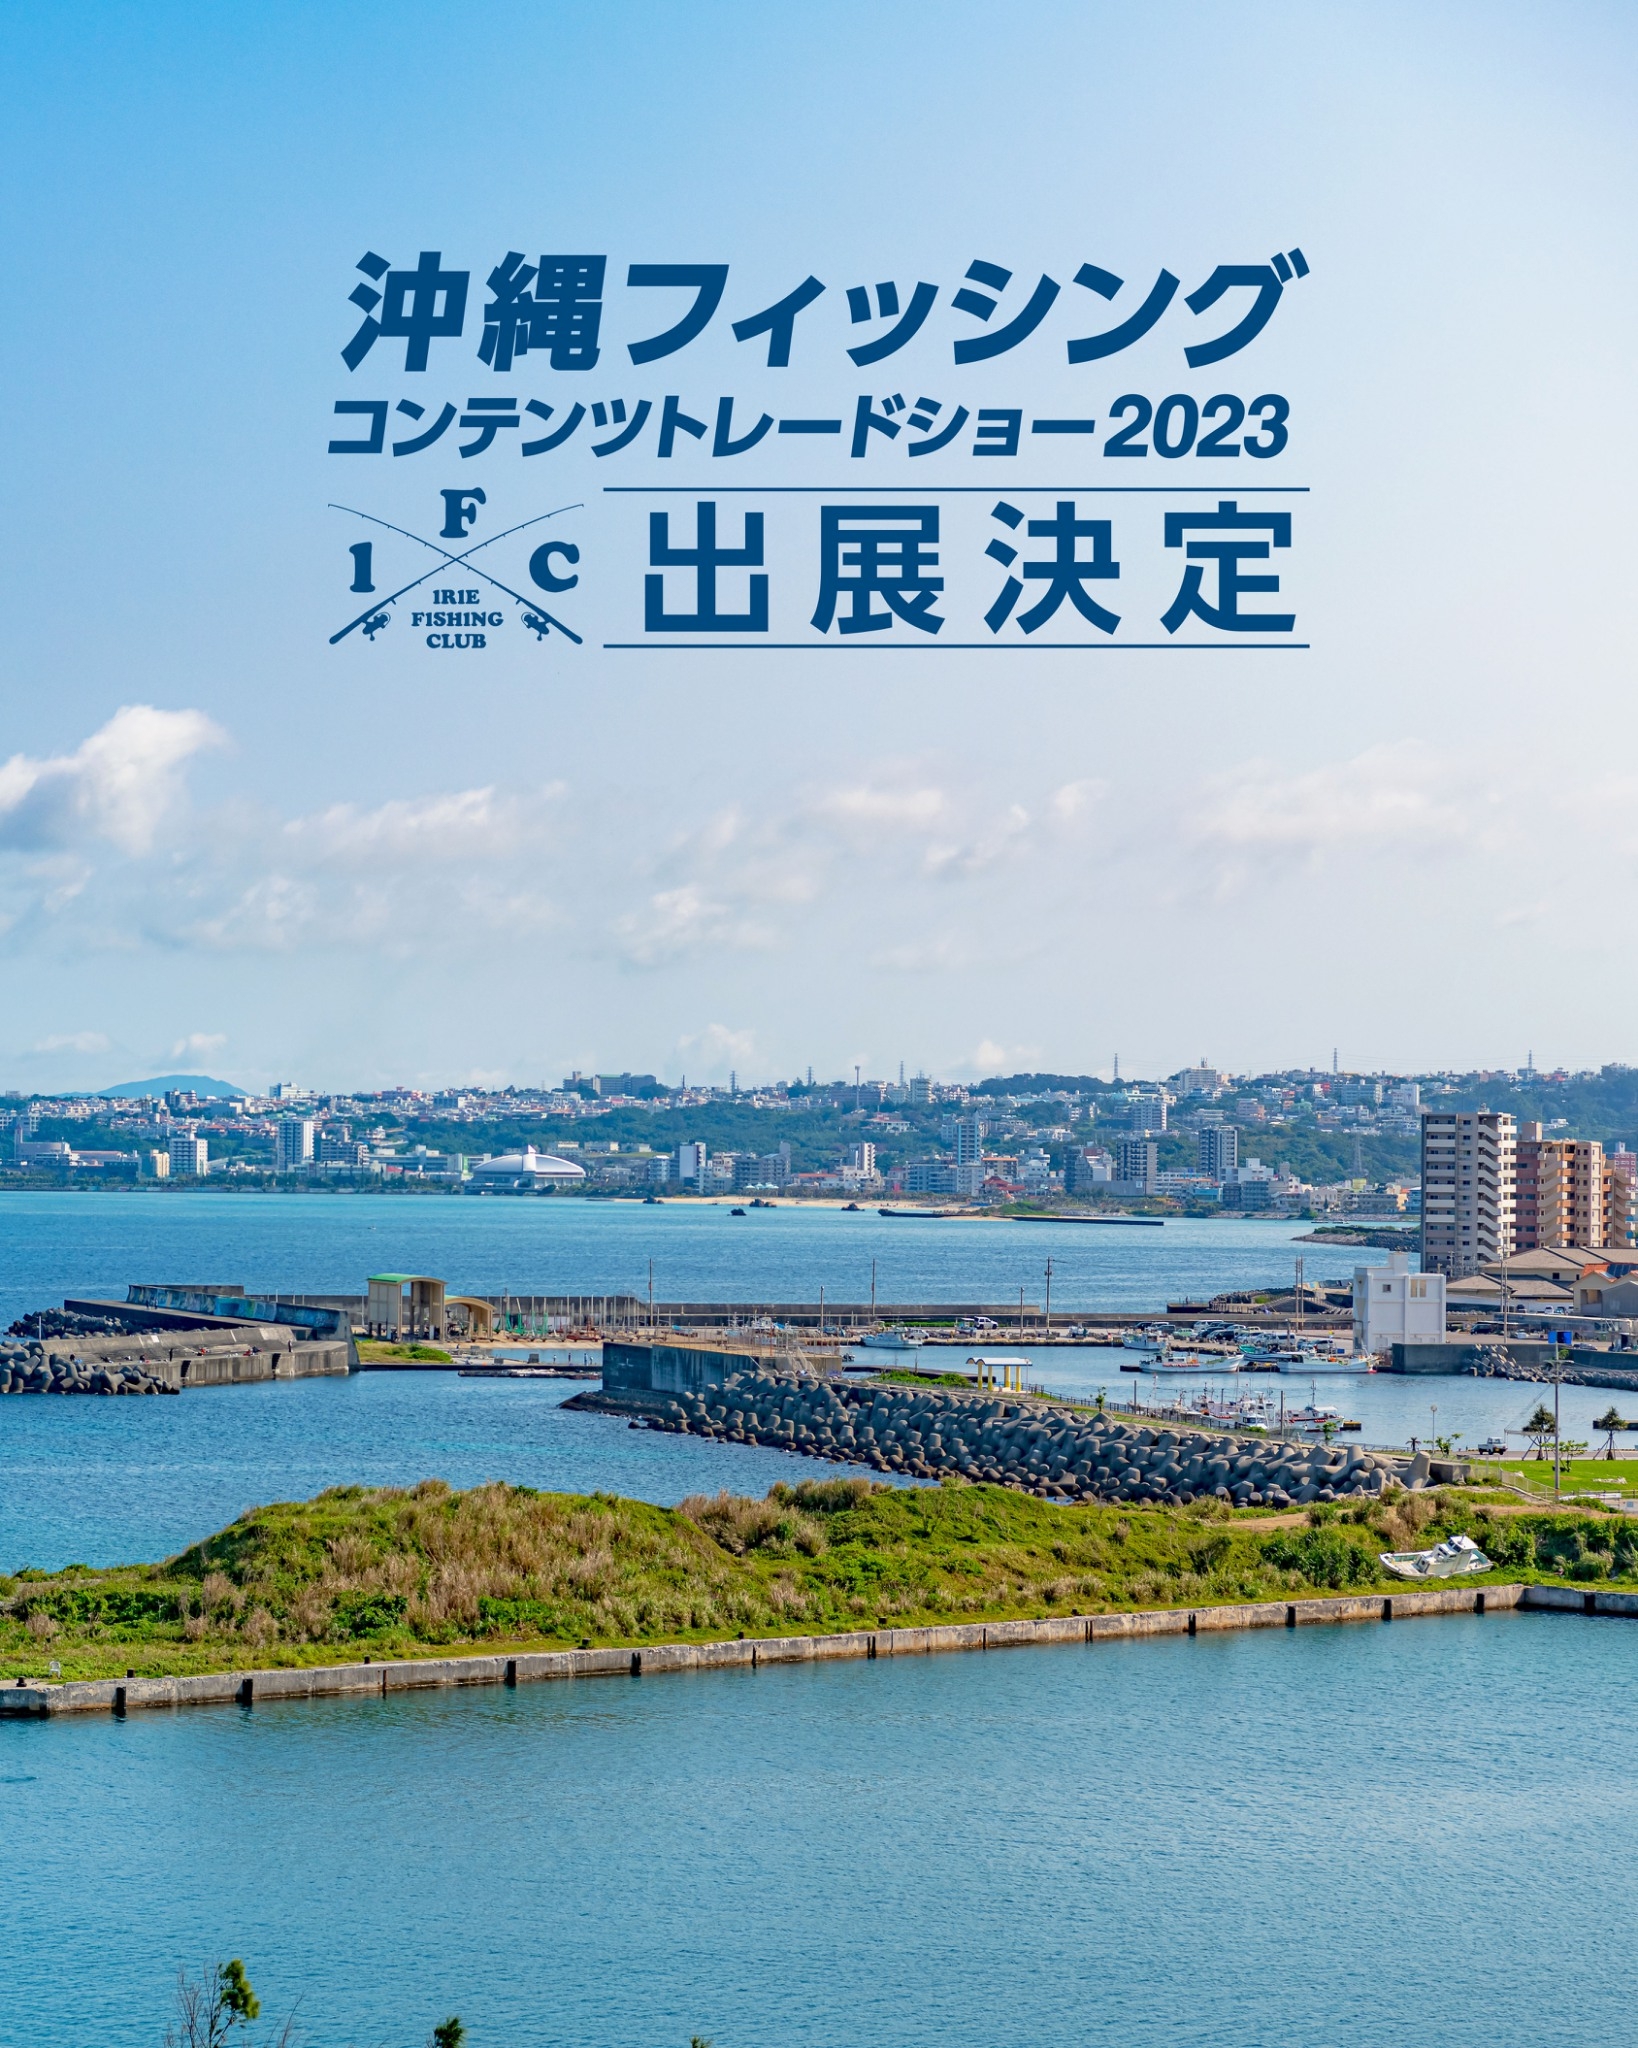 【EVENT】沖縄フィッシングコンテンツトレードショー2023出展決定